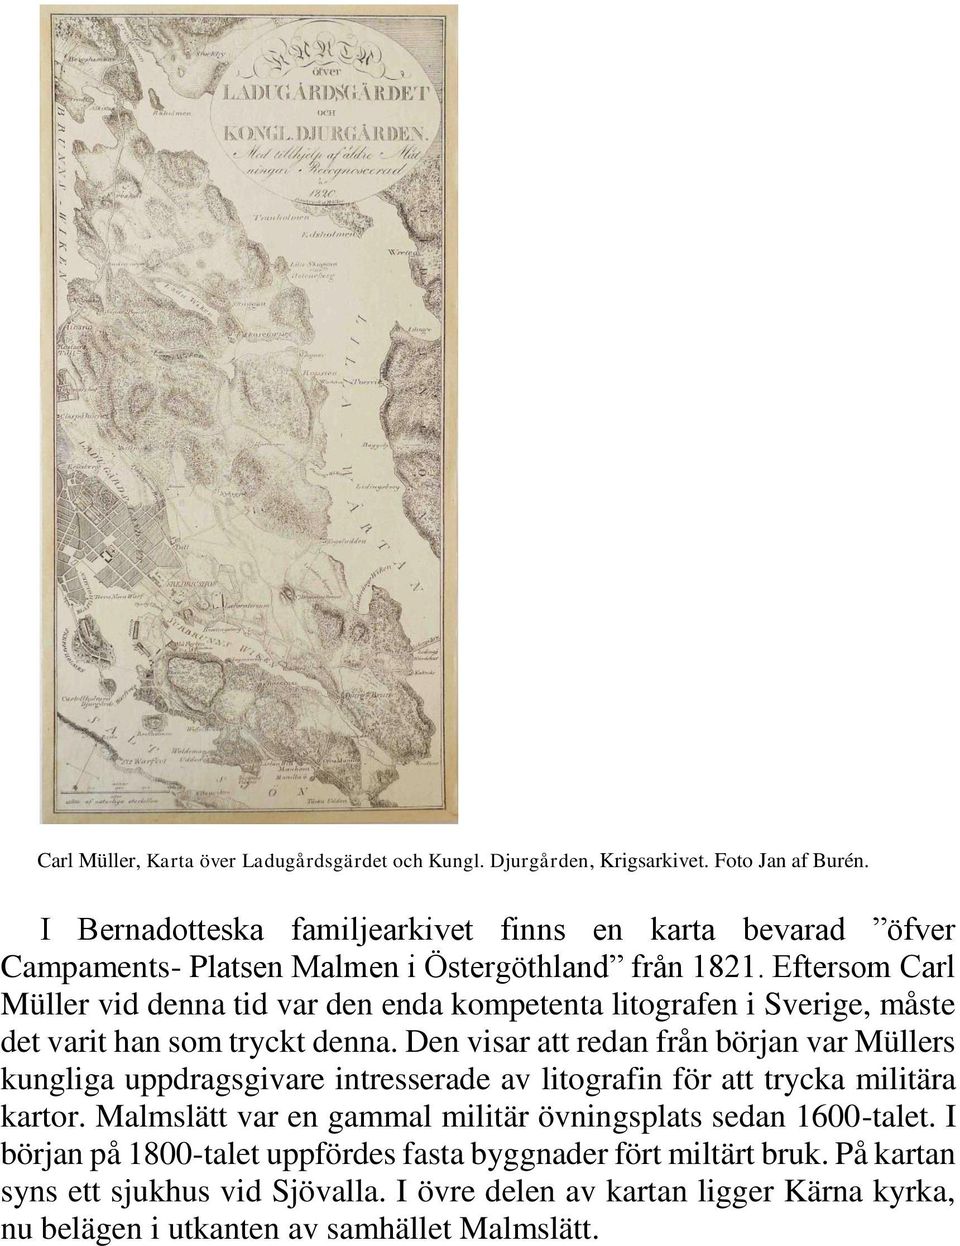 Eftersom Carl Müller vid denna tid var den enda kompetenta litografen i Sverige, måste det varit han som tryckt denna.